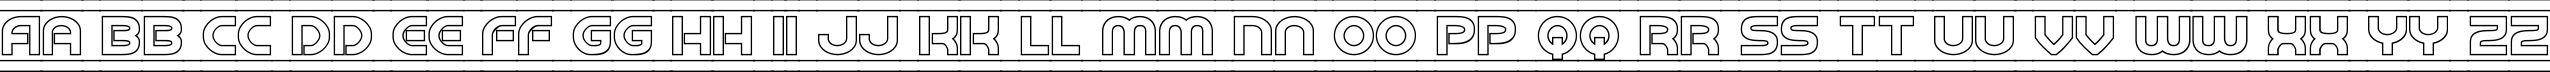 Пример написания английского алфавита шрифтом Barcade Outline